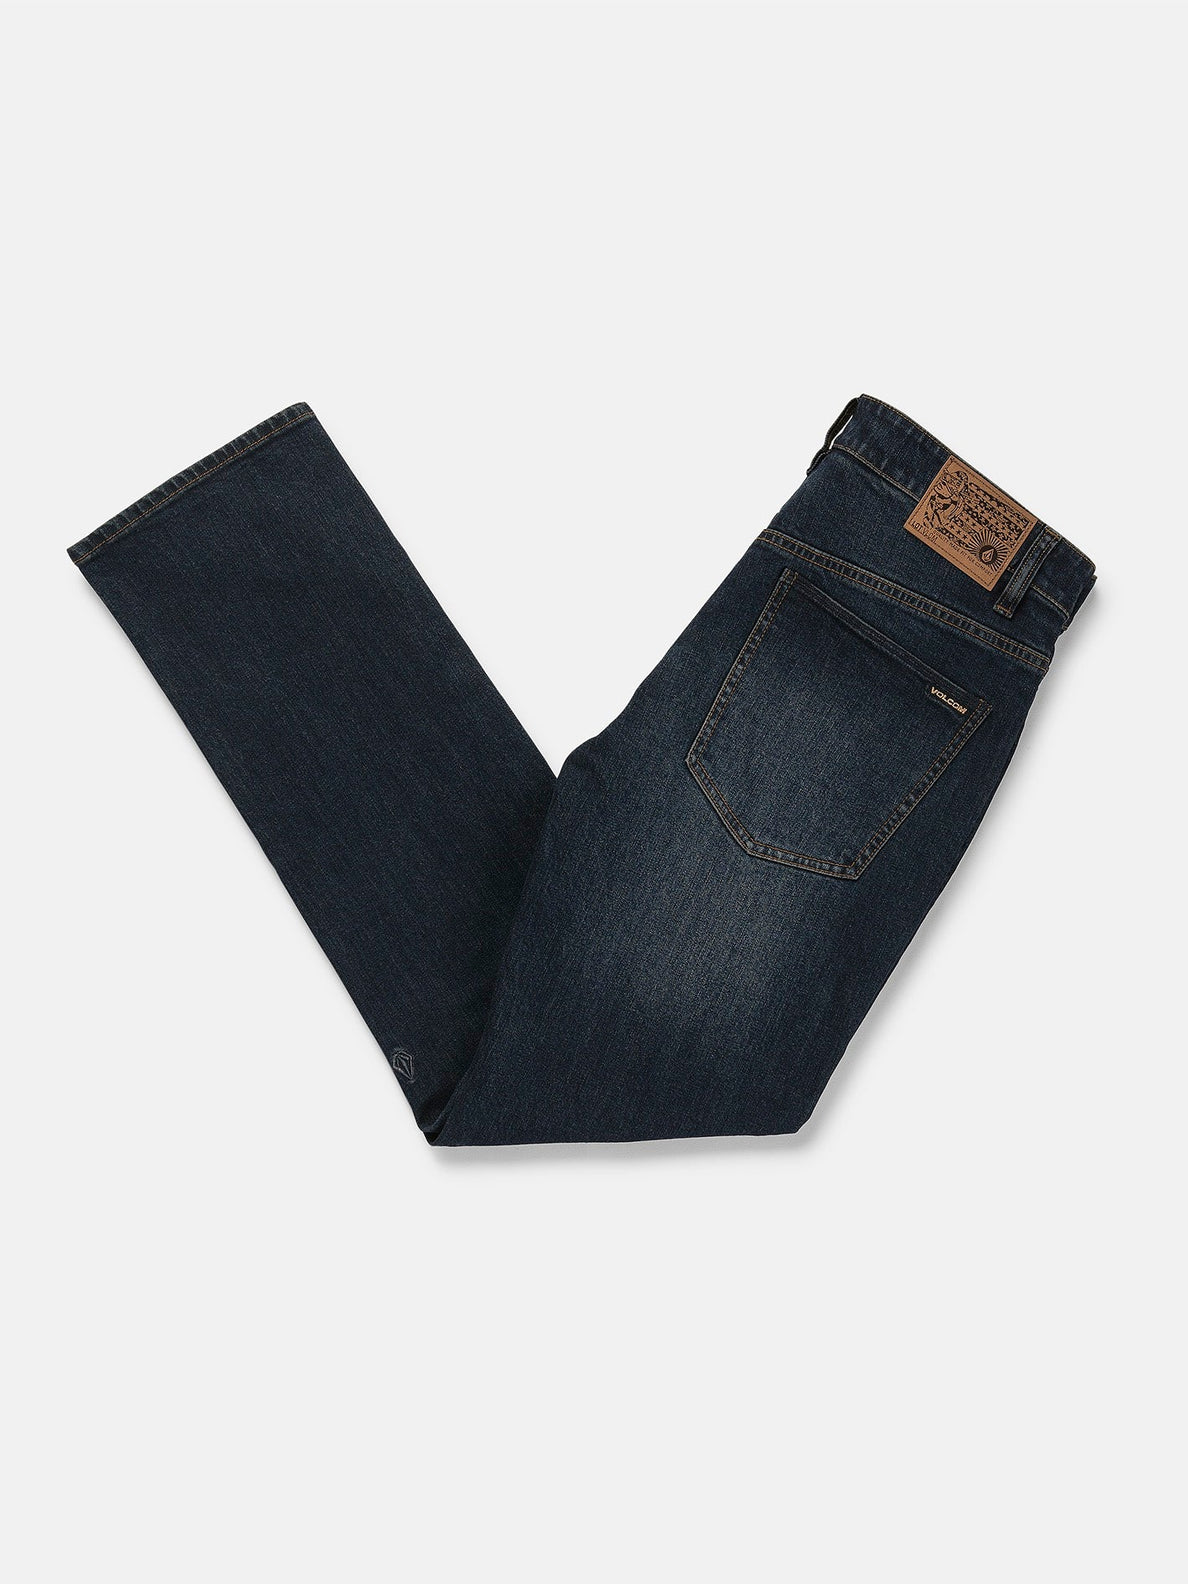 Solver Modern Fit Jeans - New Vintage Blue